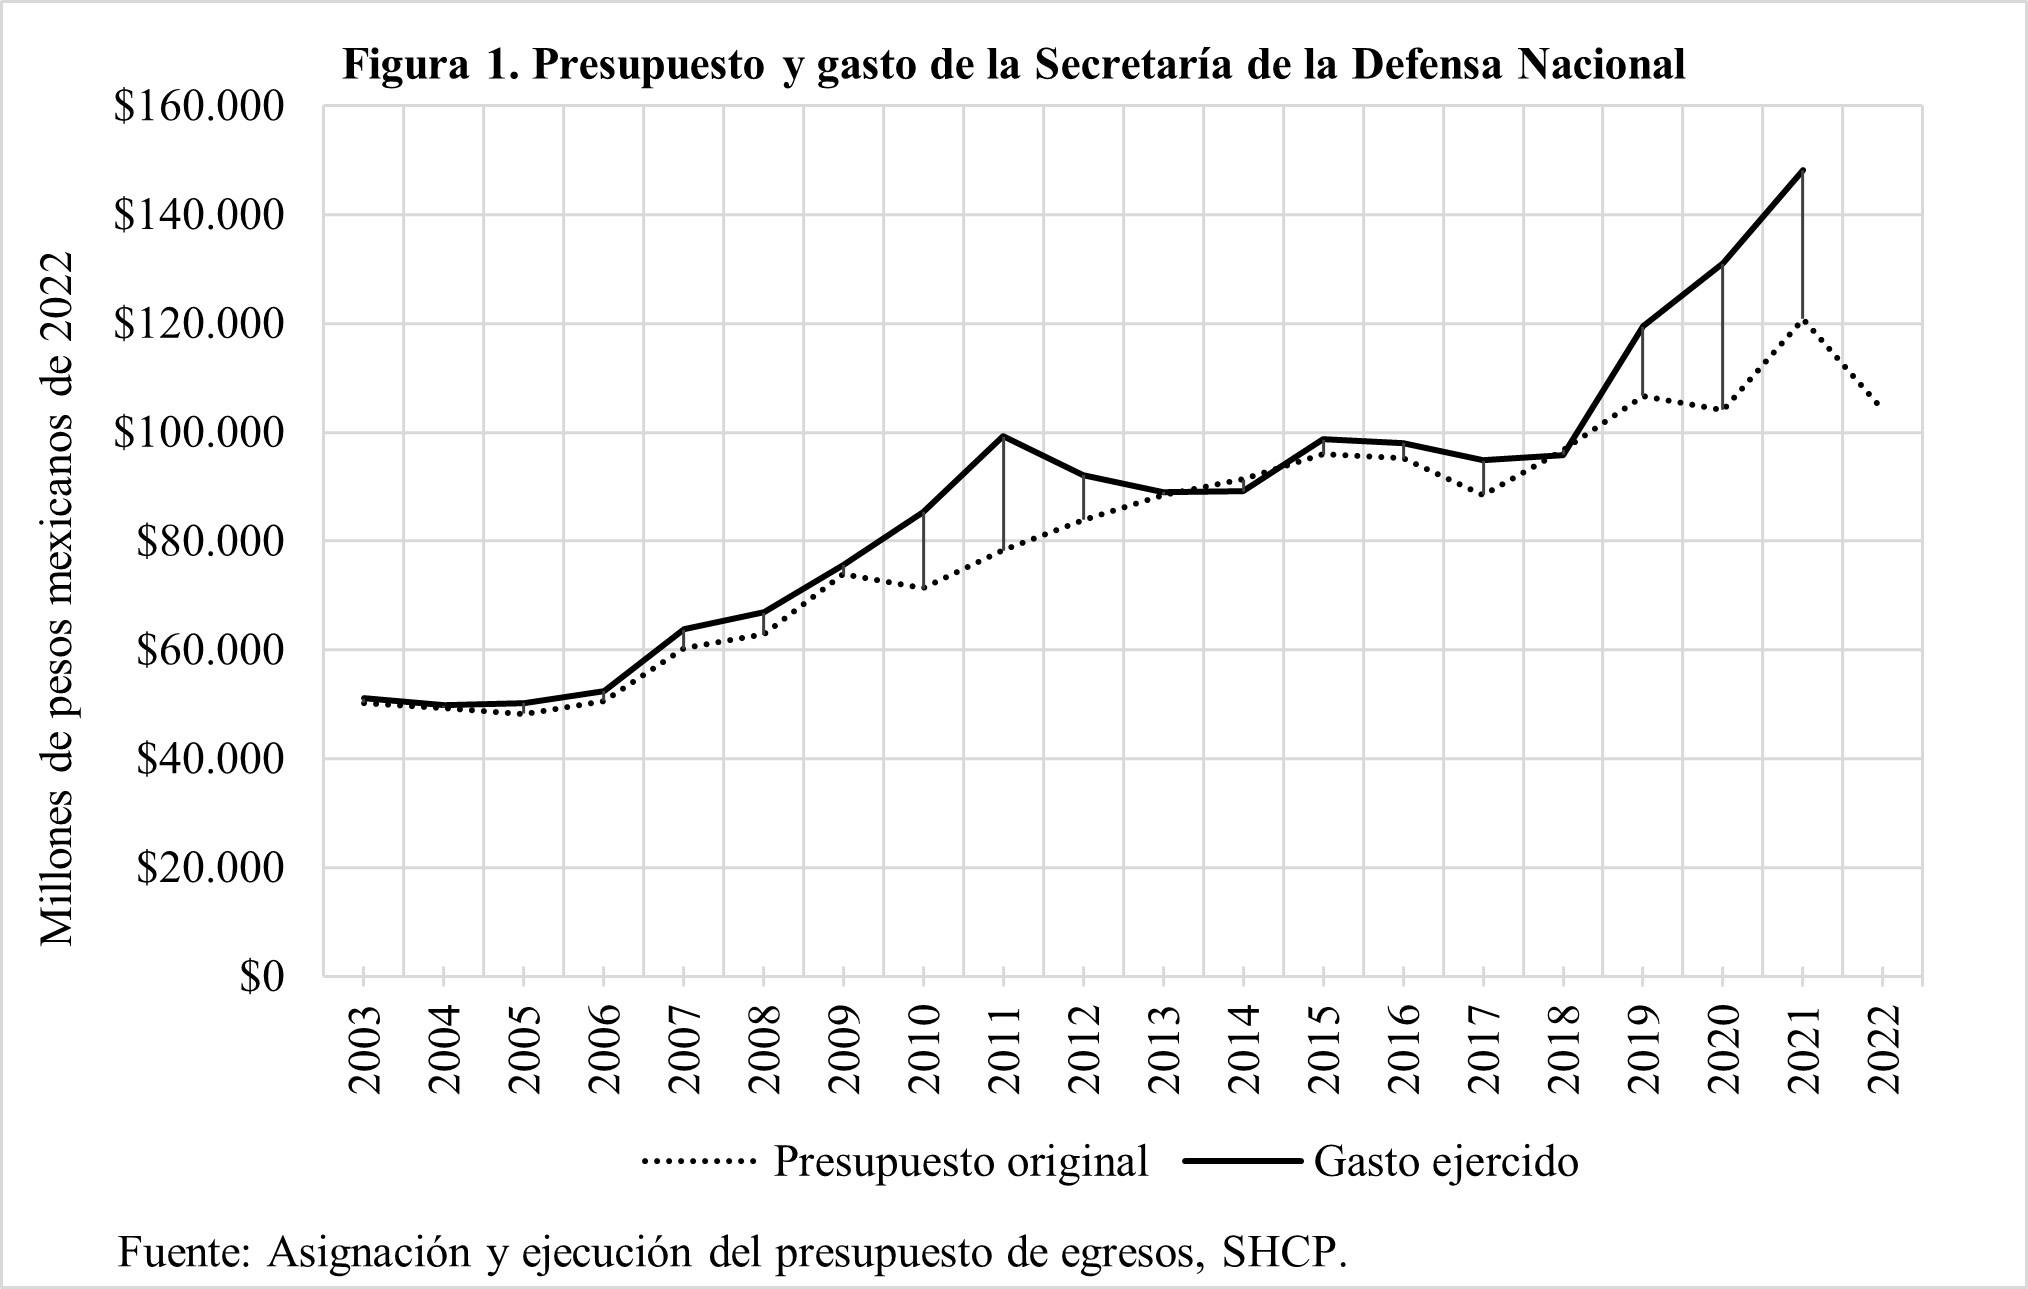 Presupuesto y gasto de la Secretaría de la Defensa Nacional 2003 - 2022 